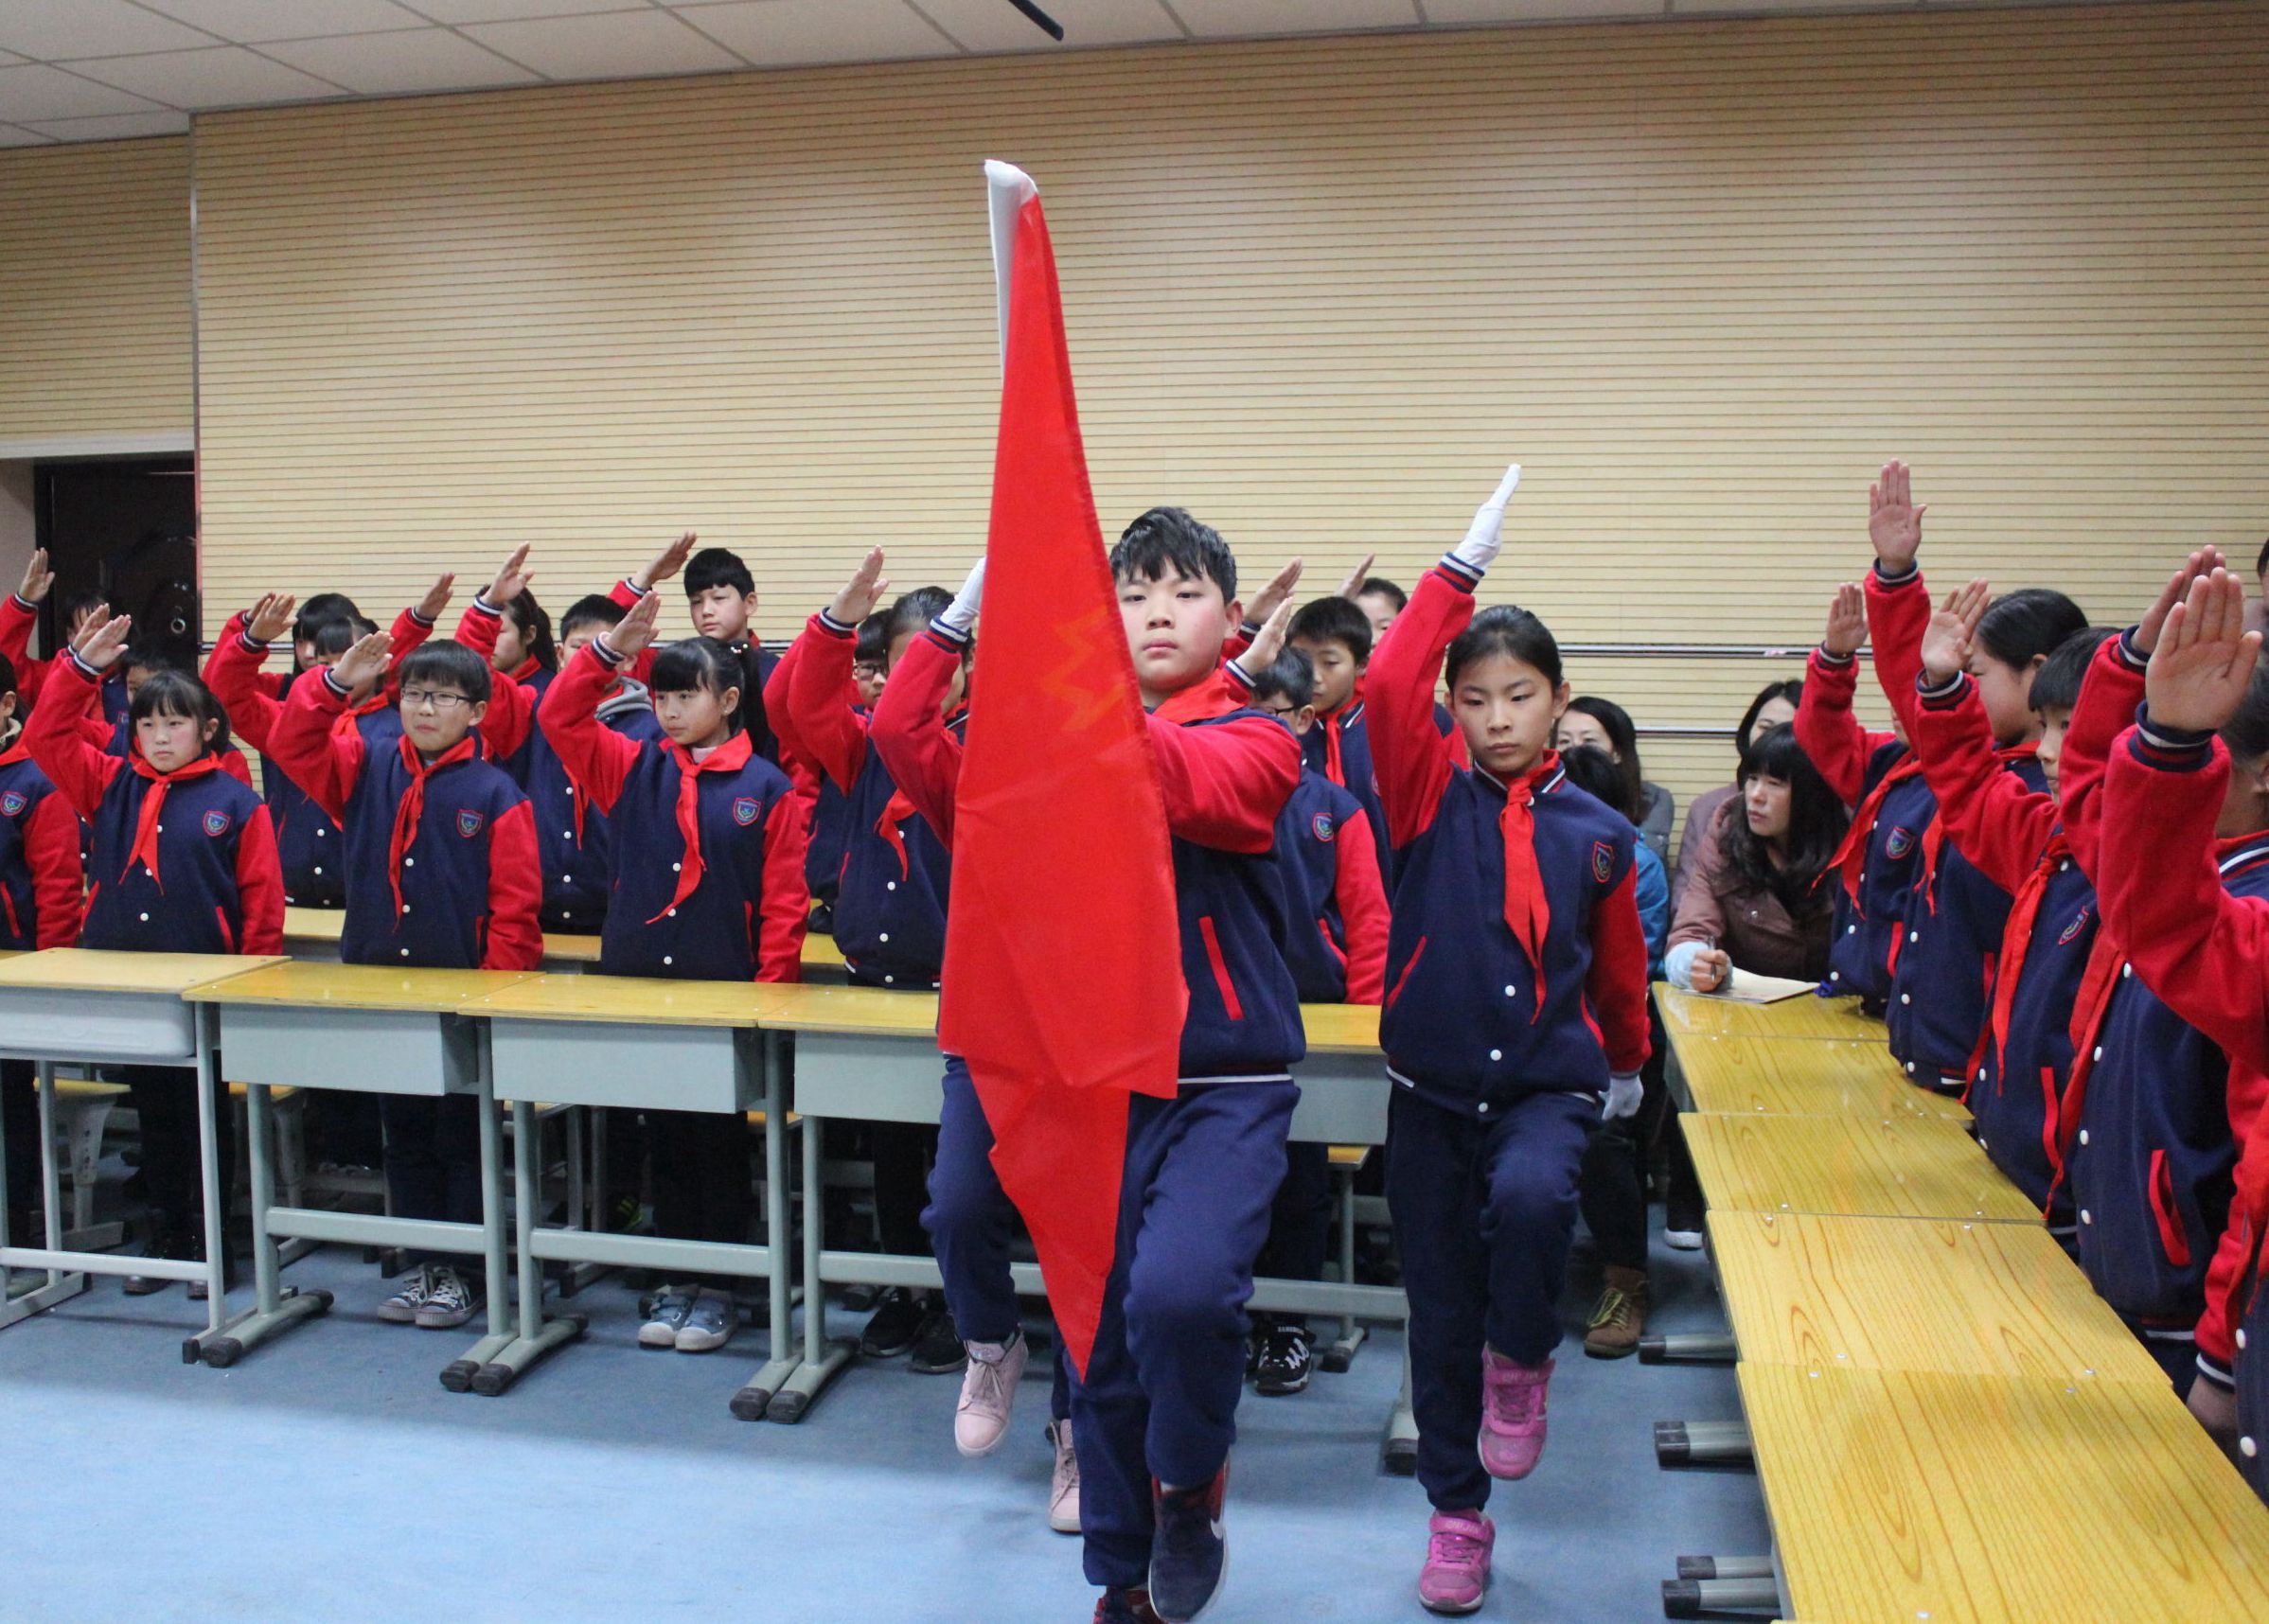 中牟县新圃街小学开展"践行社会主义核心价值观"的班队会展示课